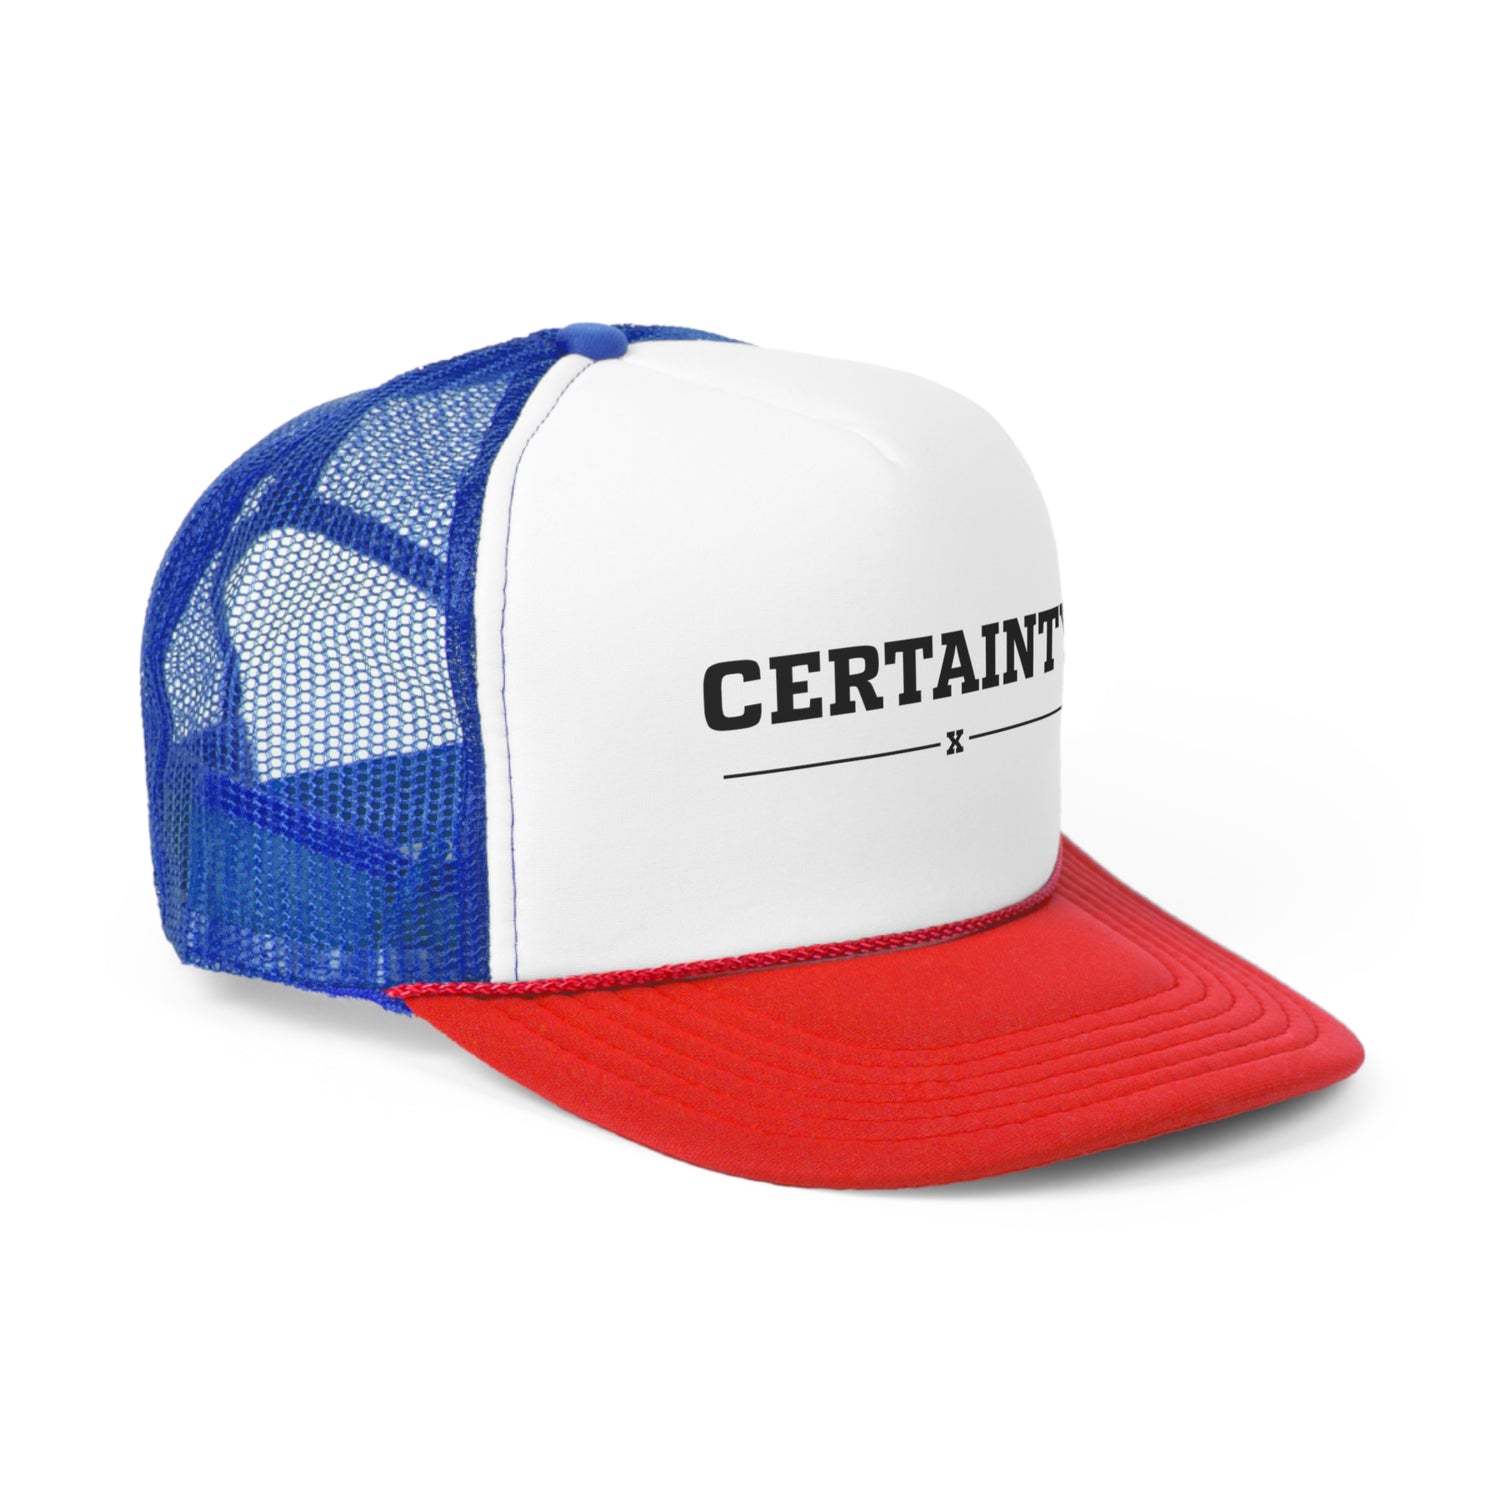 Certainty Trucker Cap